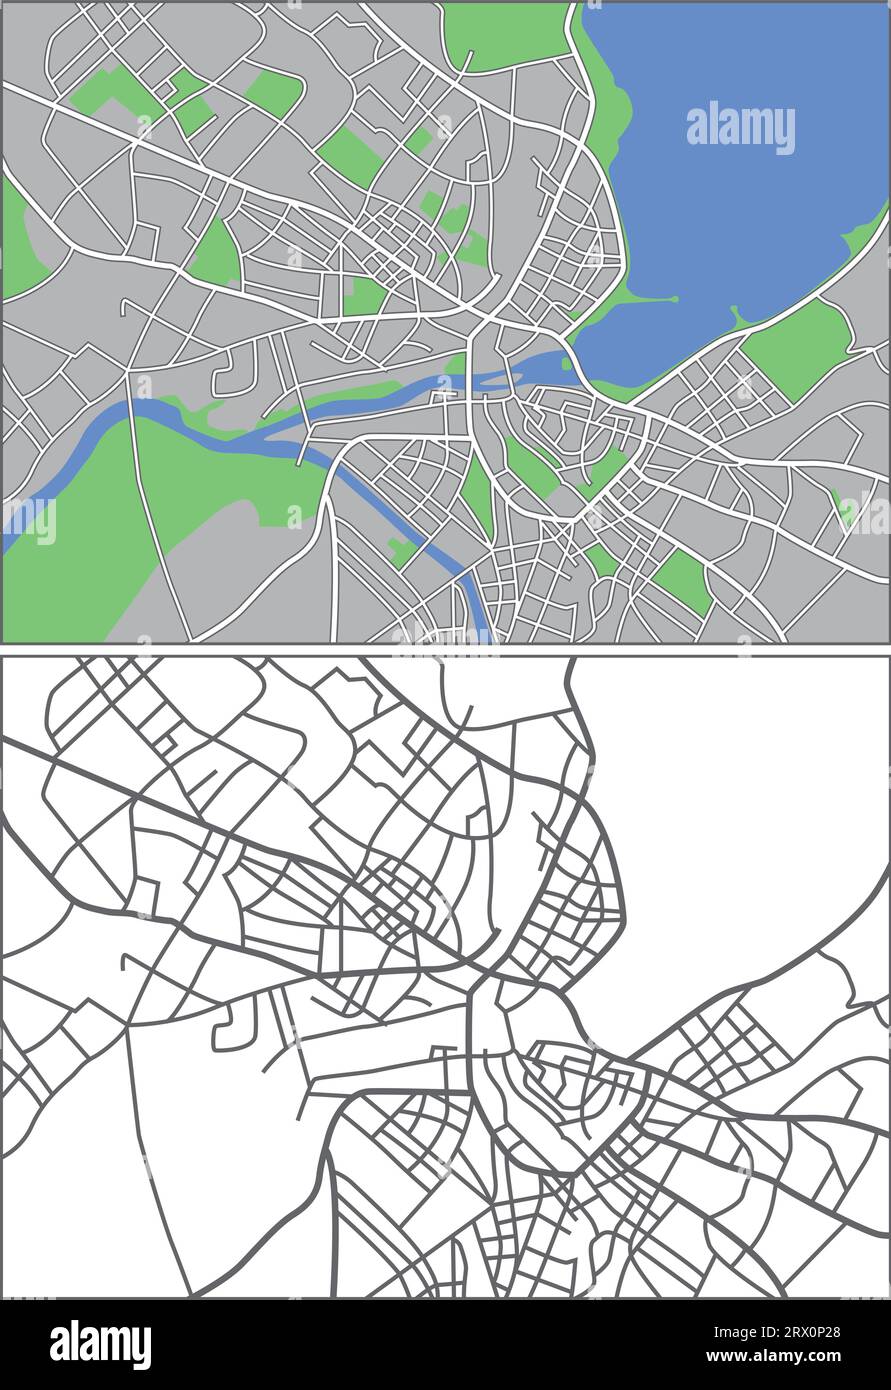 Geschichtete editierbare Vektorstreetmap von Genf, Schweiz, die Linien und farbige Formen für Land, Straßen, Flüsse und Parks enthält. Stock Vektor